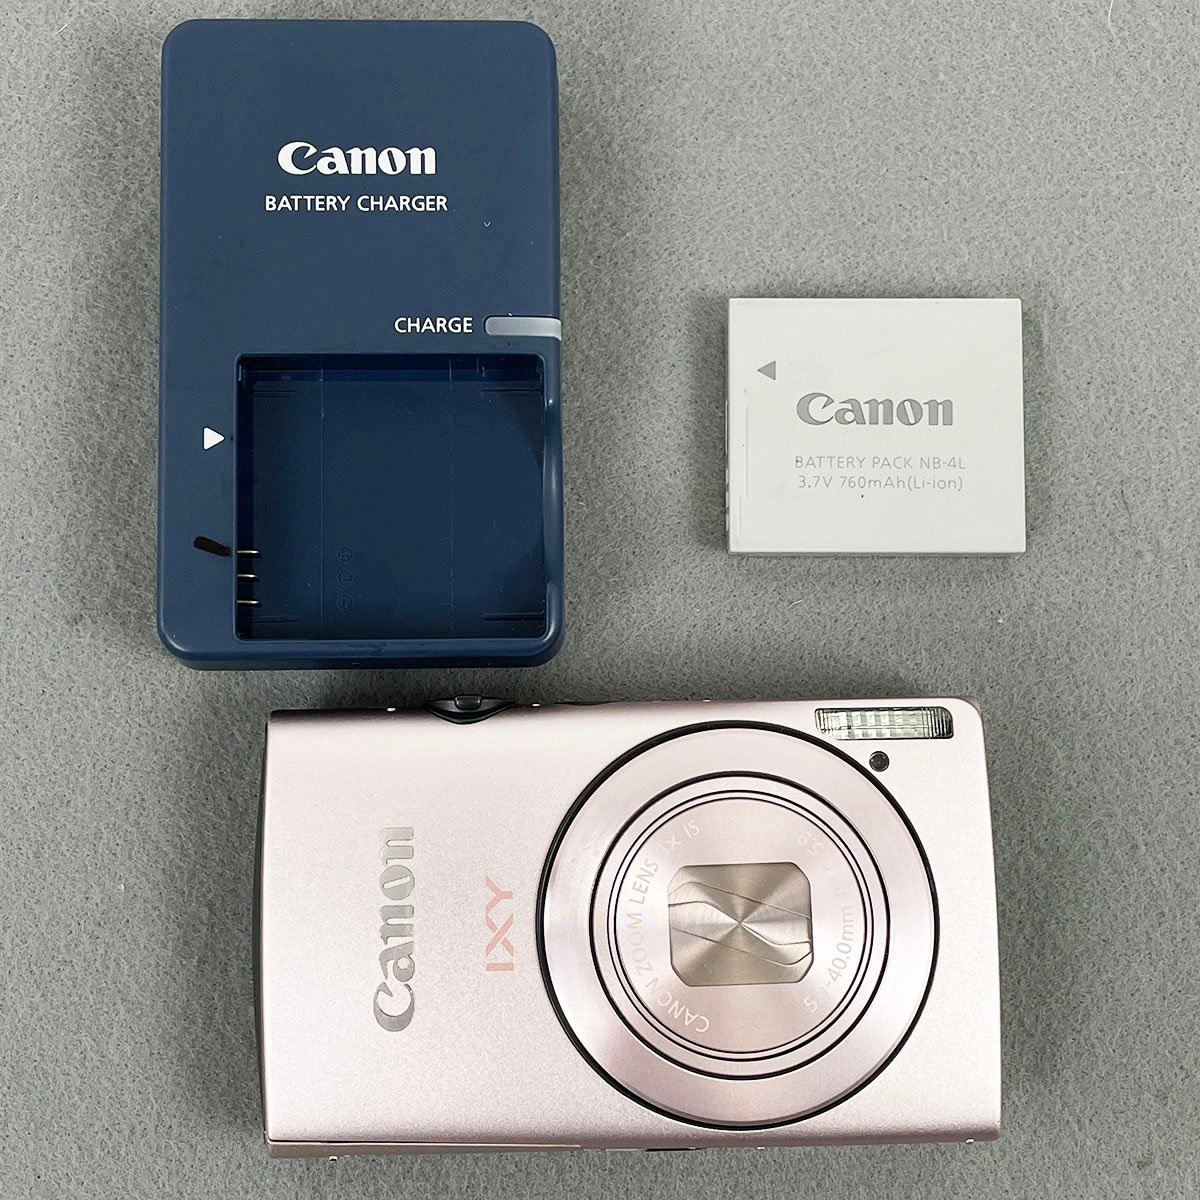 Canon キャノン コンパクトデジタルカメラ IXY 600F シャンパンピンク